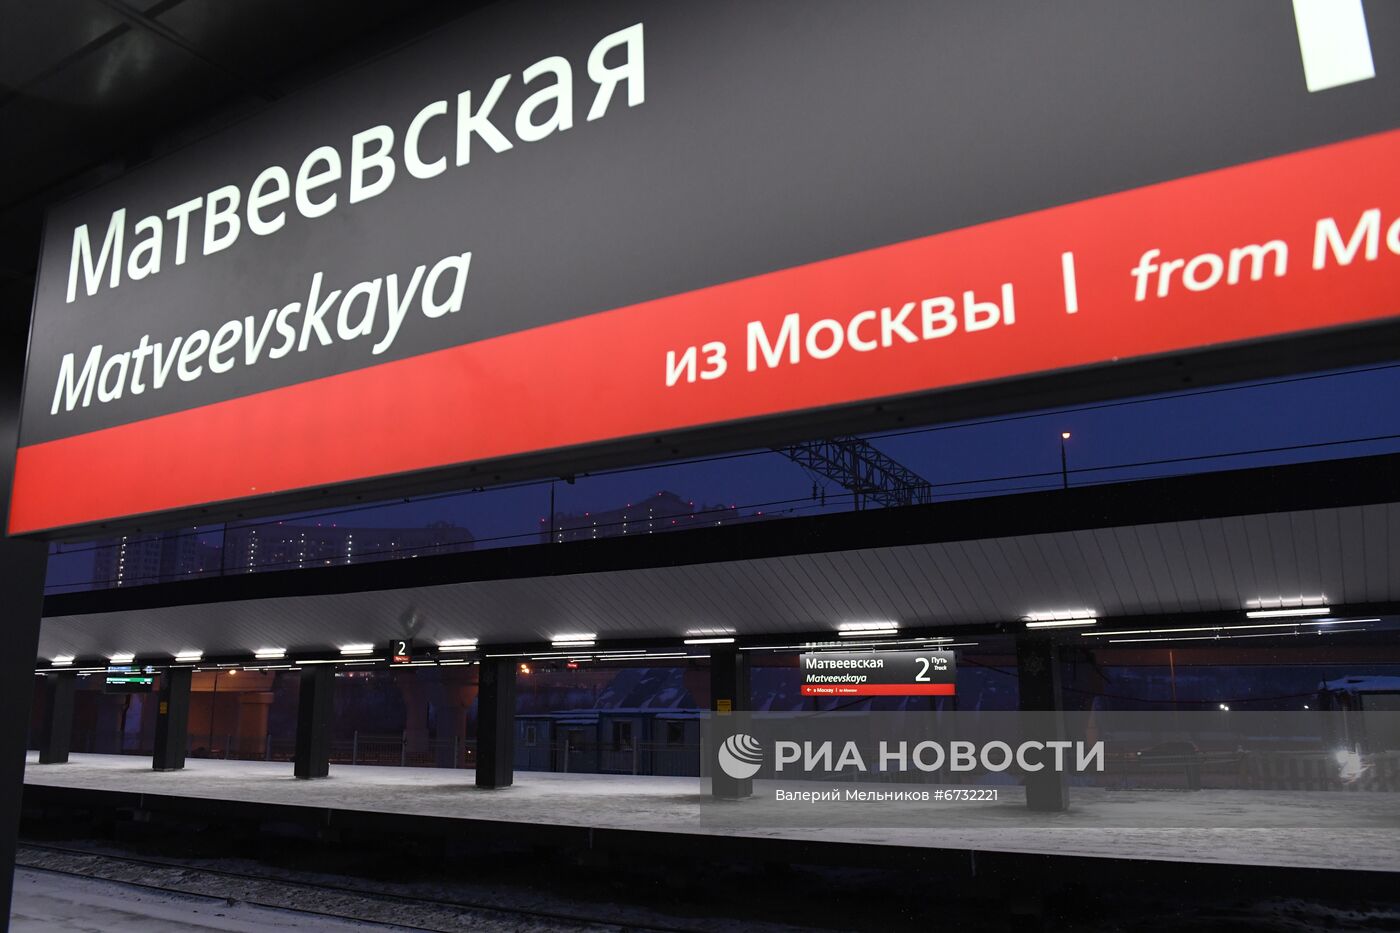 Станция МЖД "Матвеевская" после реконструкции